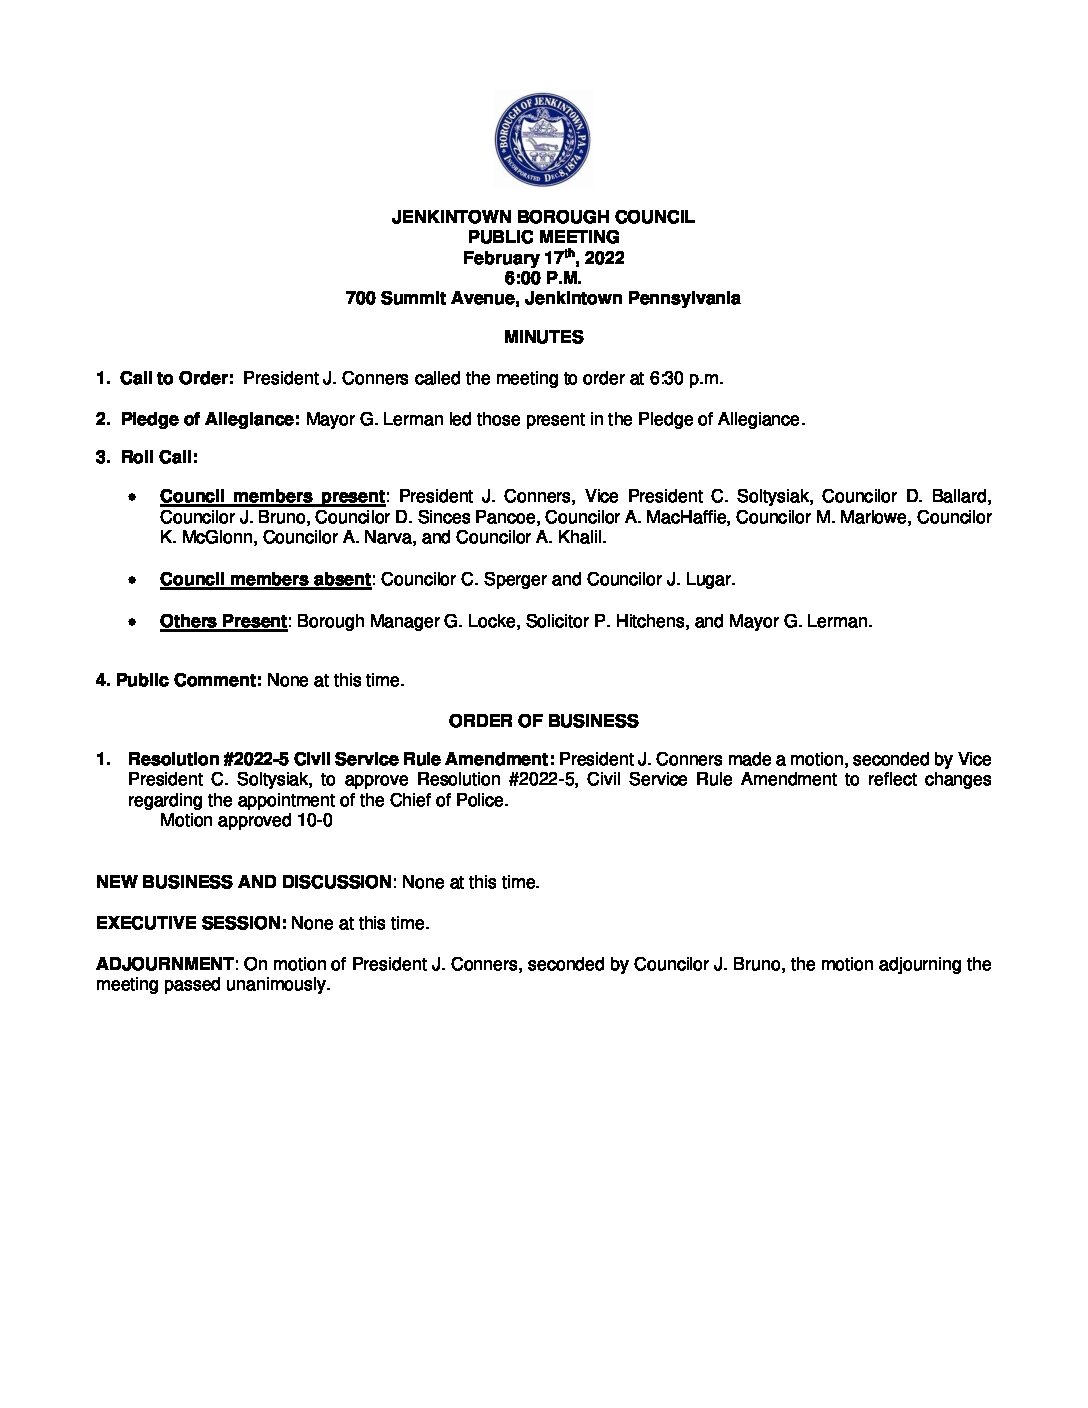 JEAC Agenda 2023-01-04 - Jenkintown Borough, PA